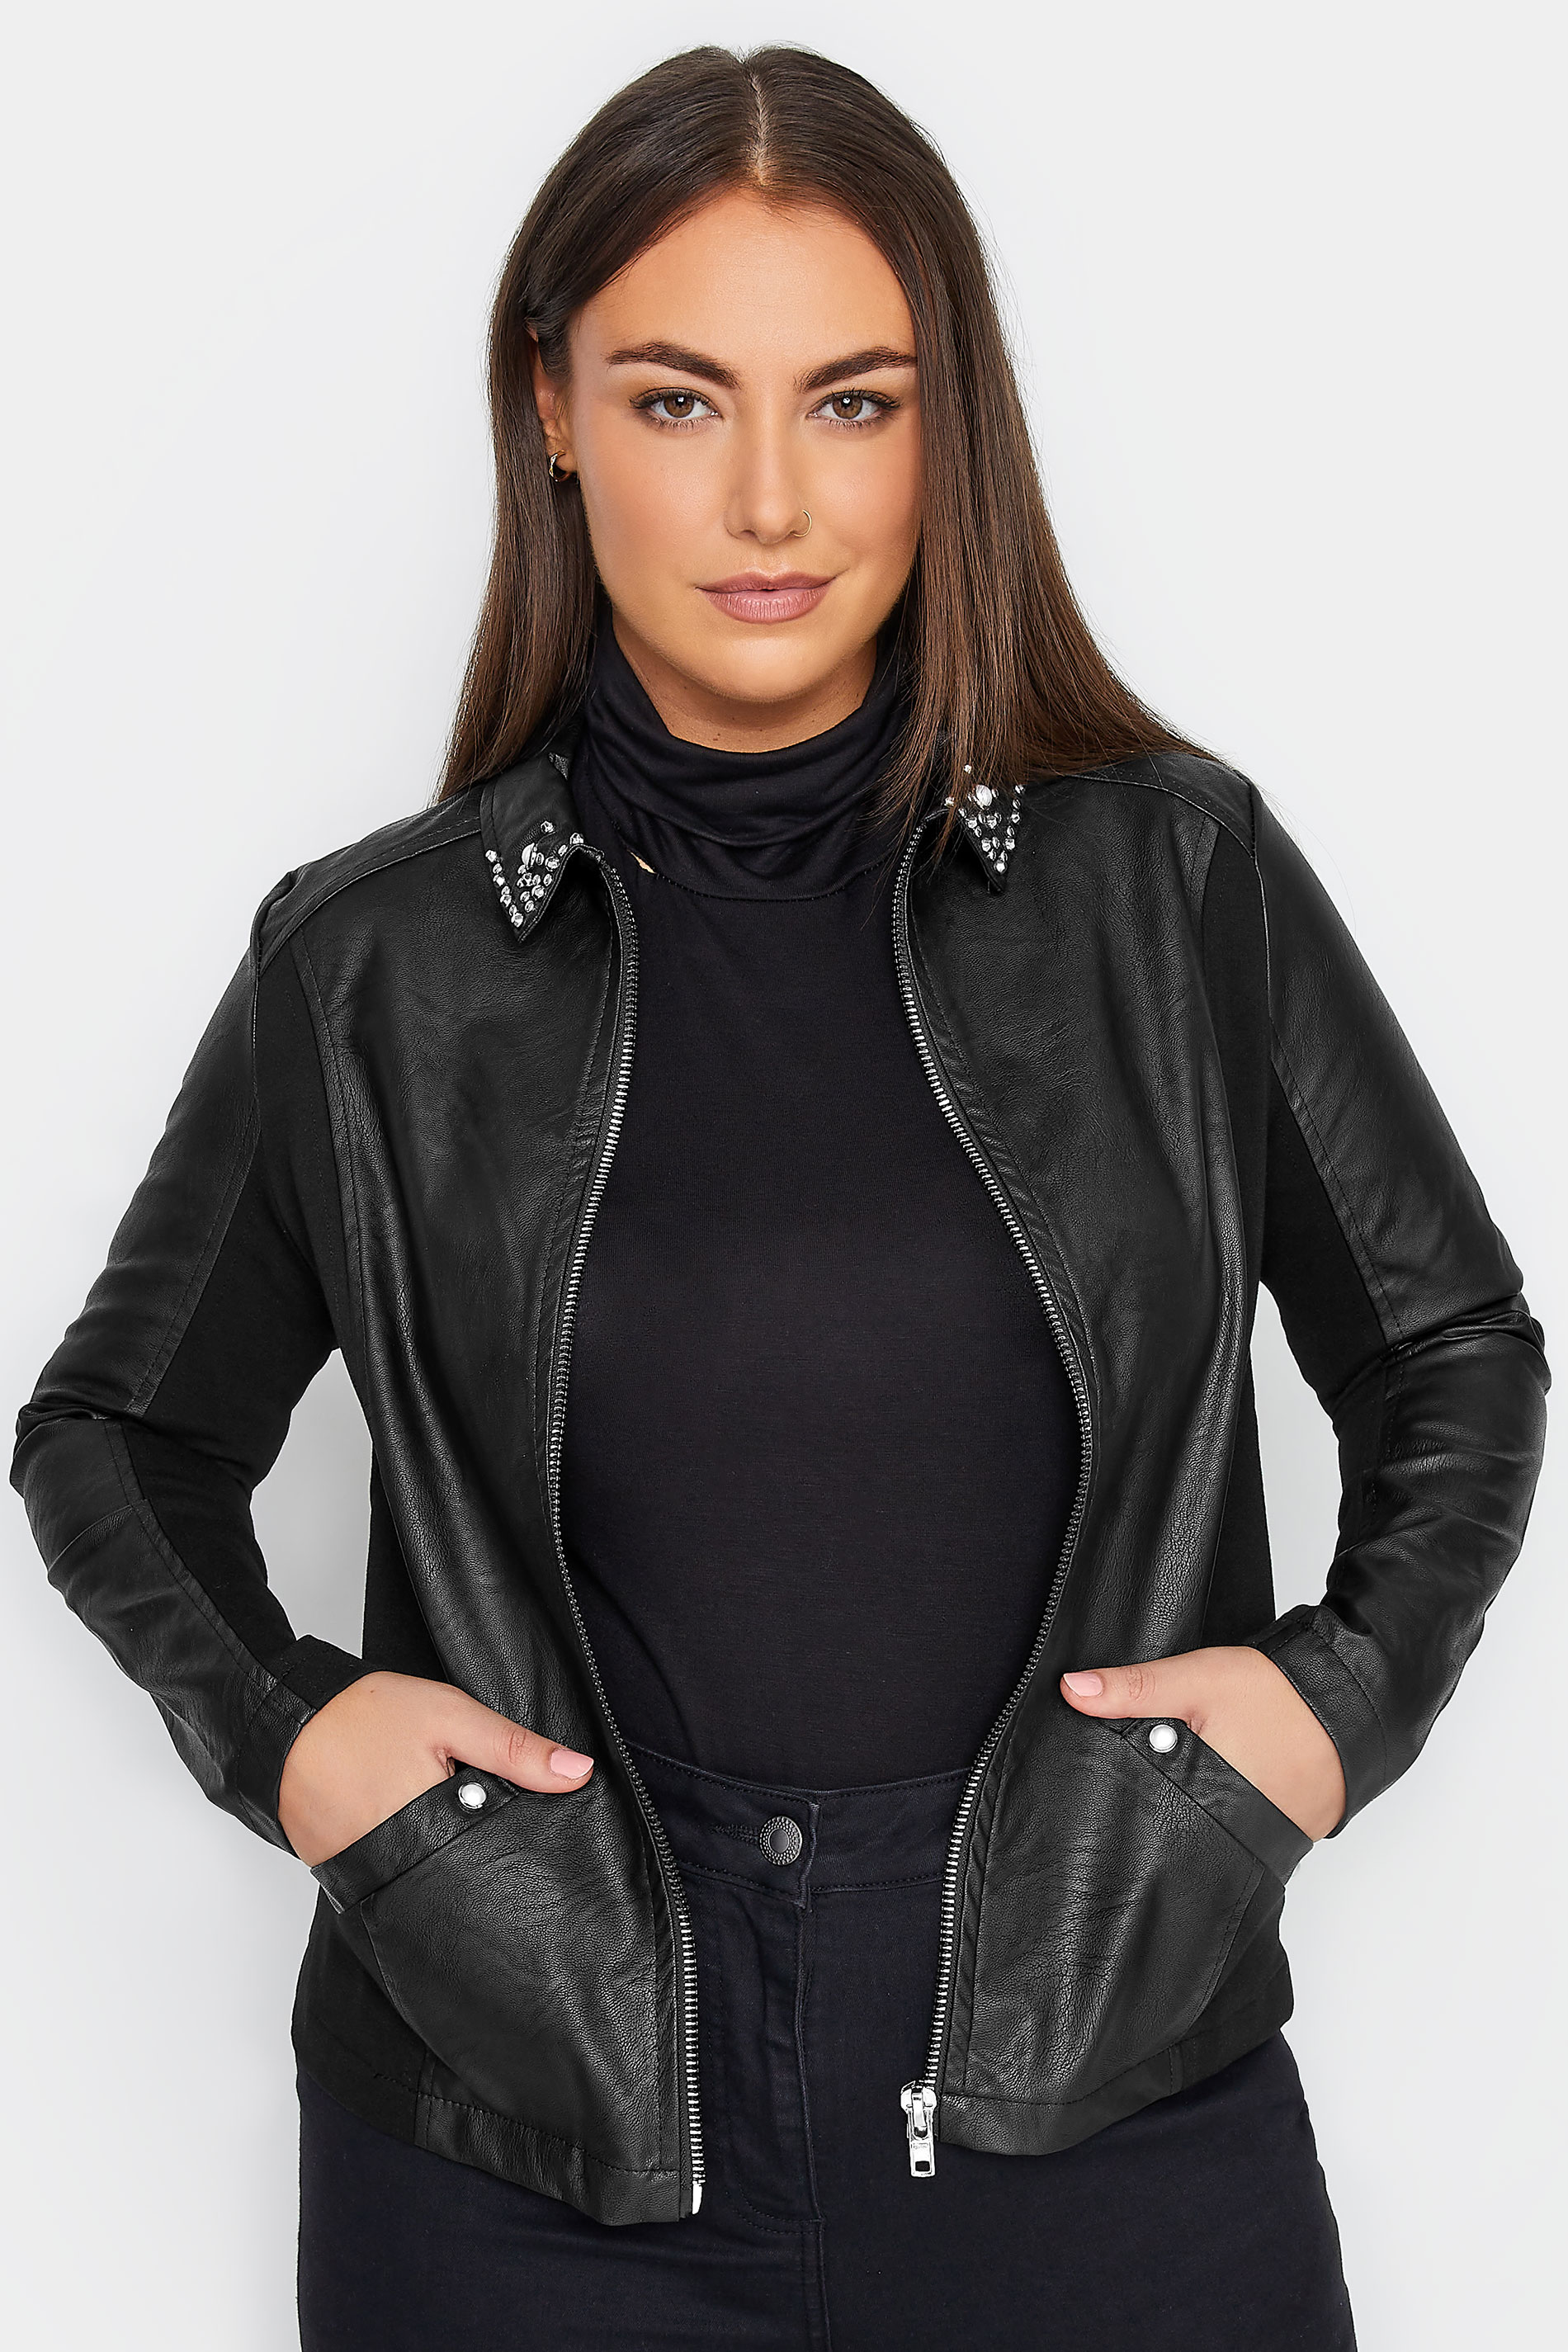 Manon Baptiste Black Embellished Faux Leather Jacket 1